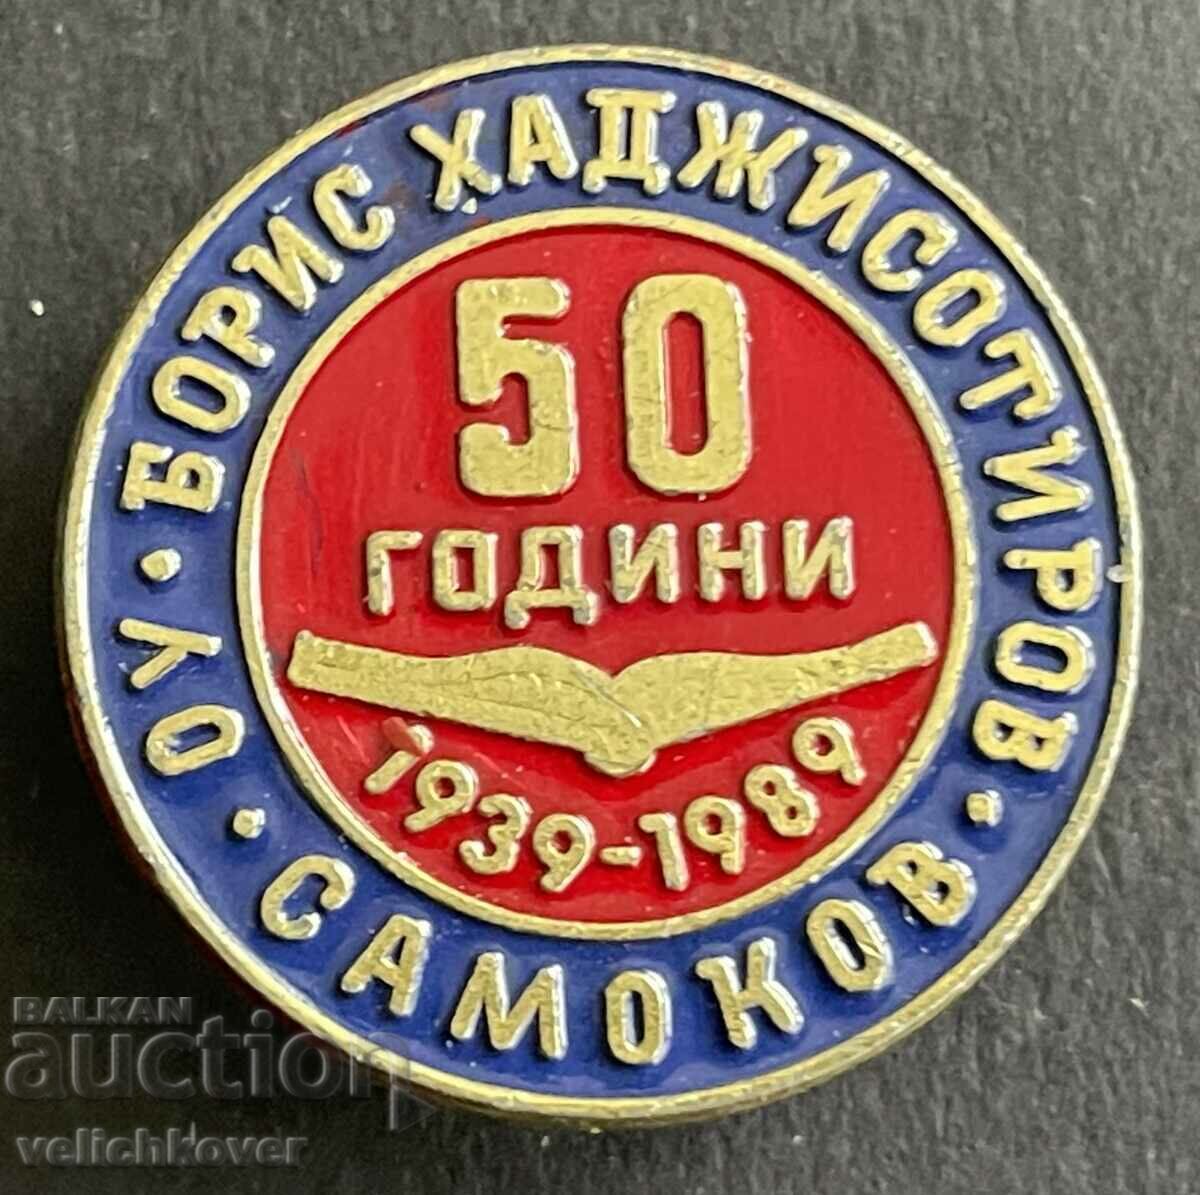 37543 Bulgaria semn 50 de ani. Școala primară Boris Hadjisotirov